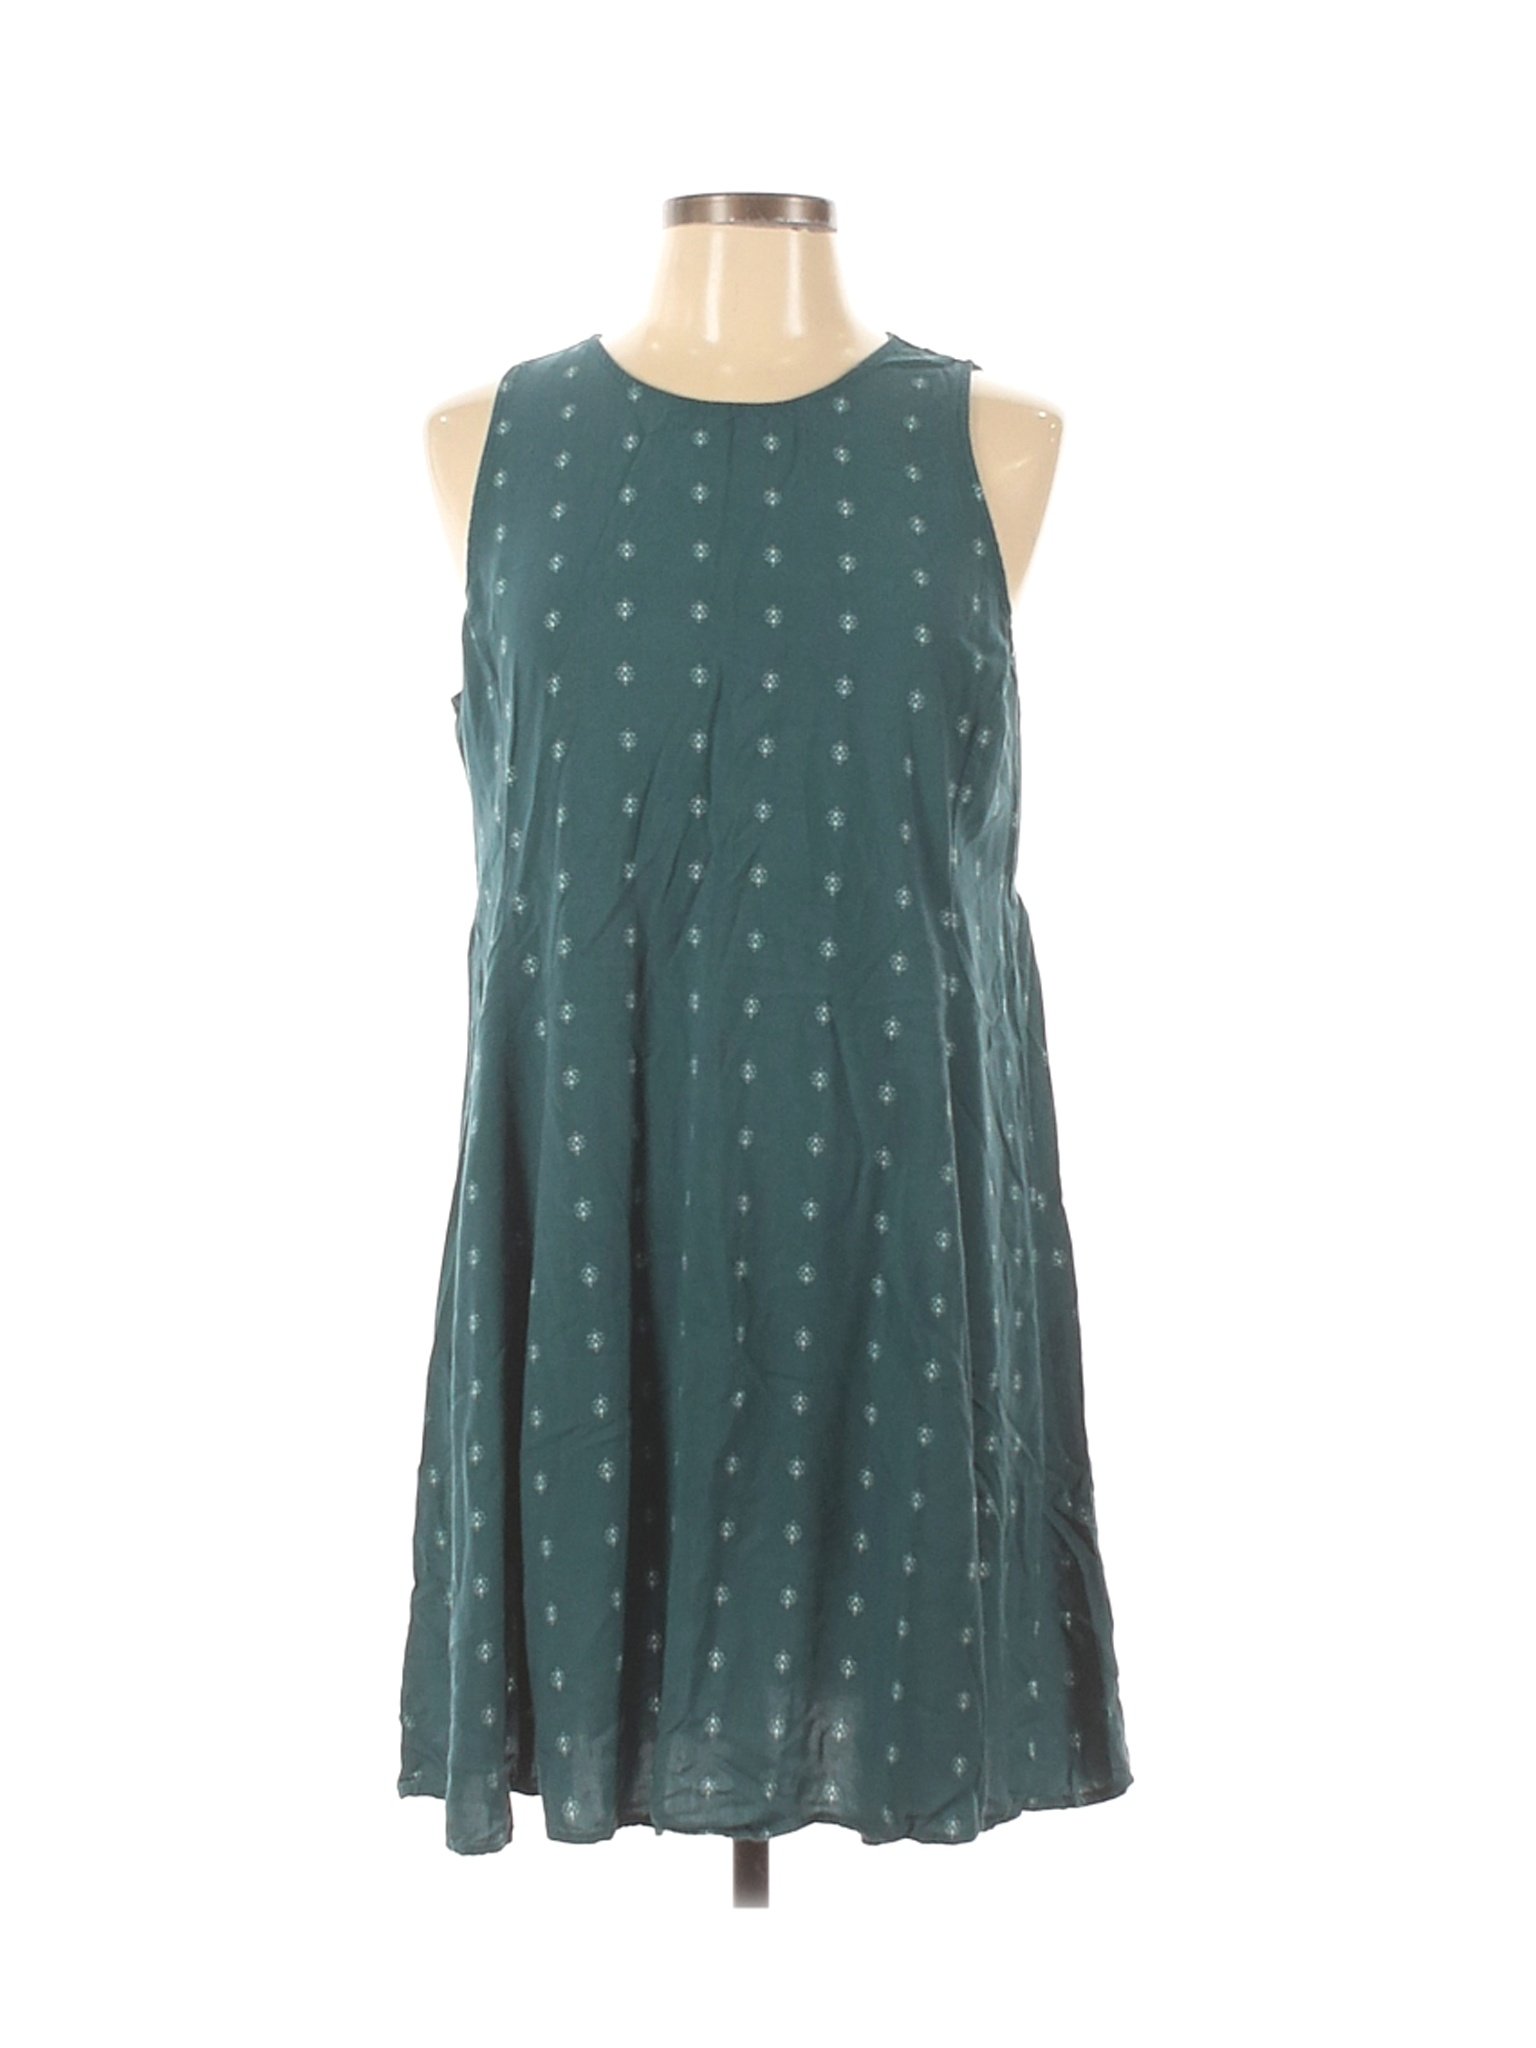 Old Navy Women Green Casual Dress L | eBay